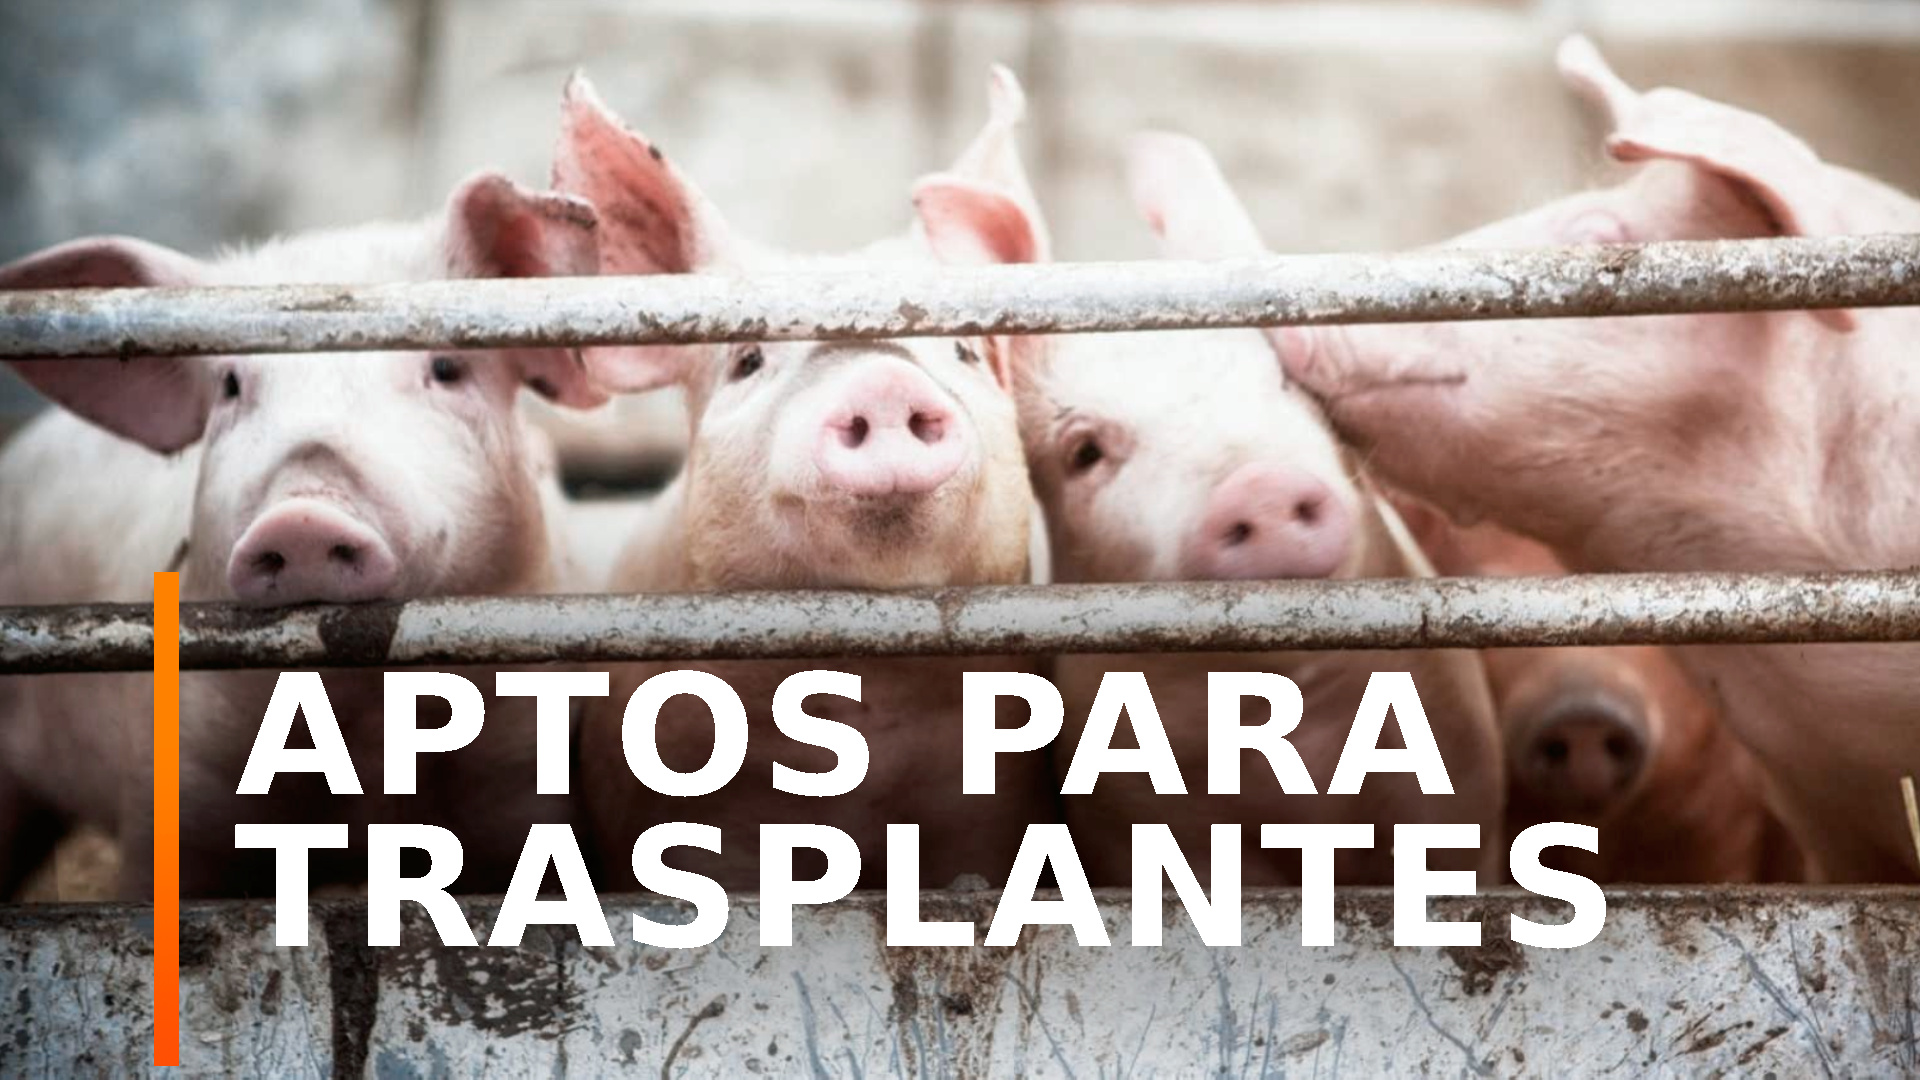 Ir al Video Científicos alemanes crían cerdos modificados genéticamente como donantes de órganos